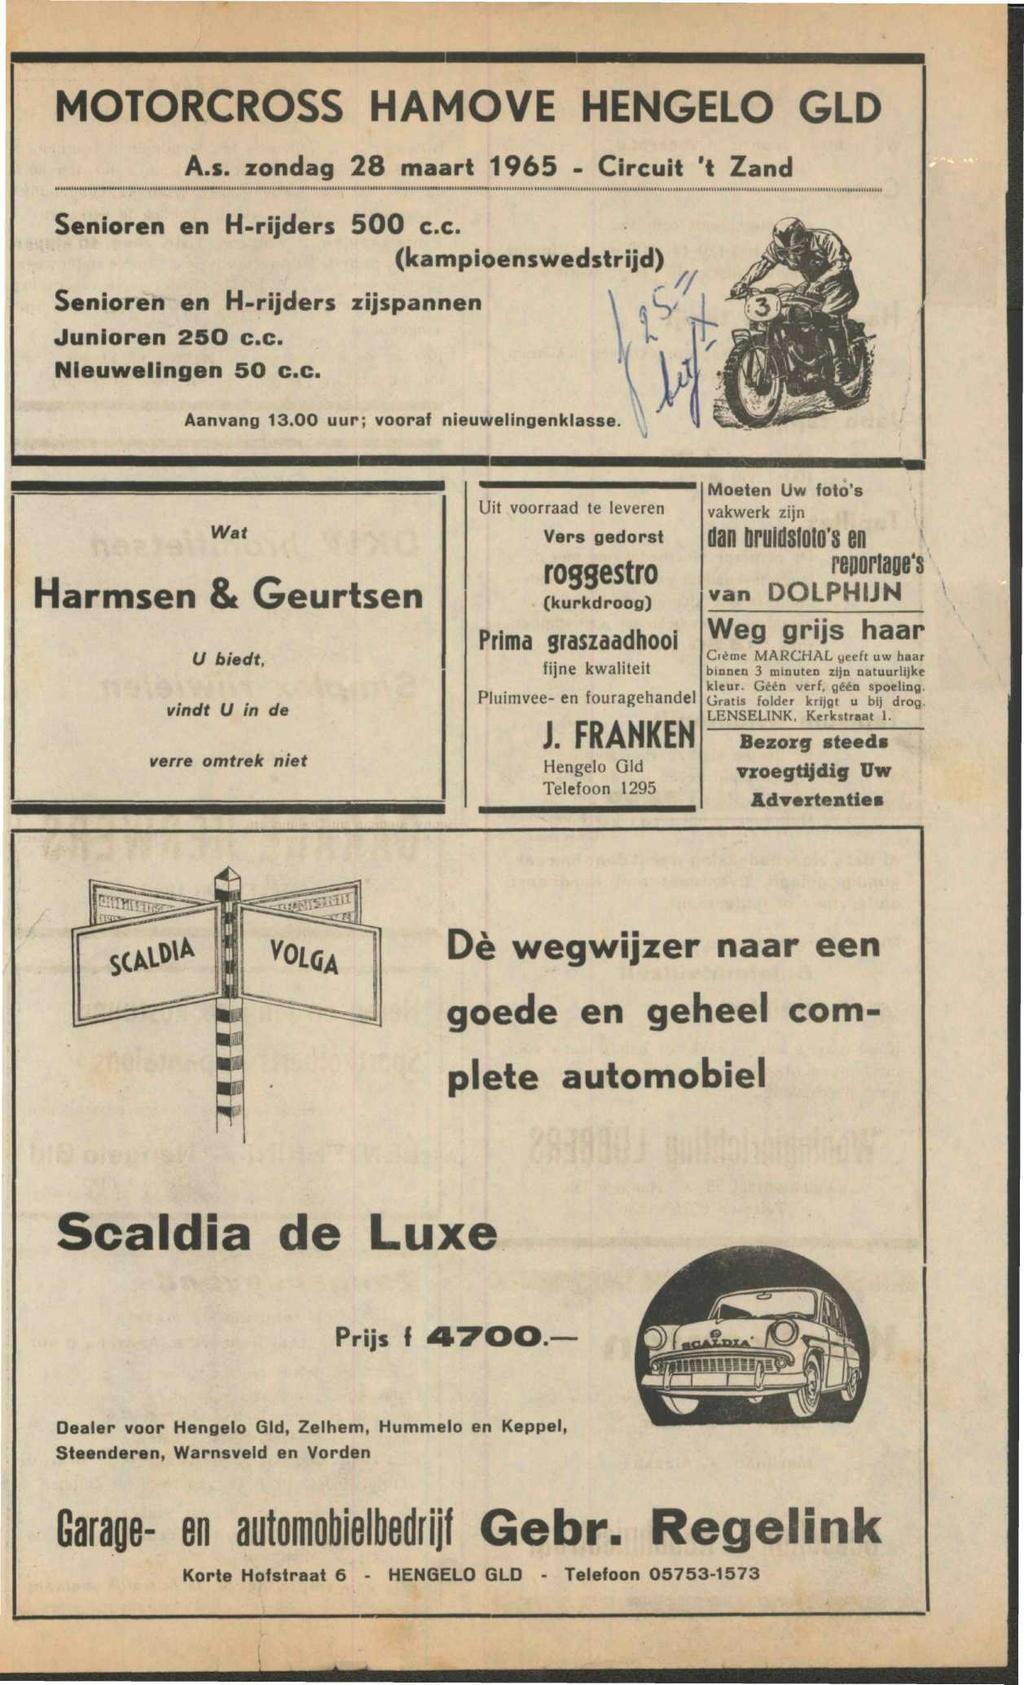 MOTORCROSS HAMOVE HENGELO GLD A.s. zondag 28 maart 1965 - Circuit 't Zand Senioren en H-rijders 500 c.c. (kampioenswedstrijd) Senioren en H-rijders zijspannen V V lfc Aanvang 13.